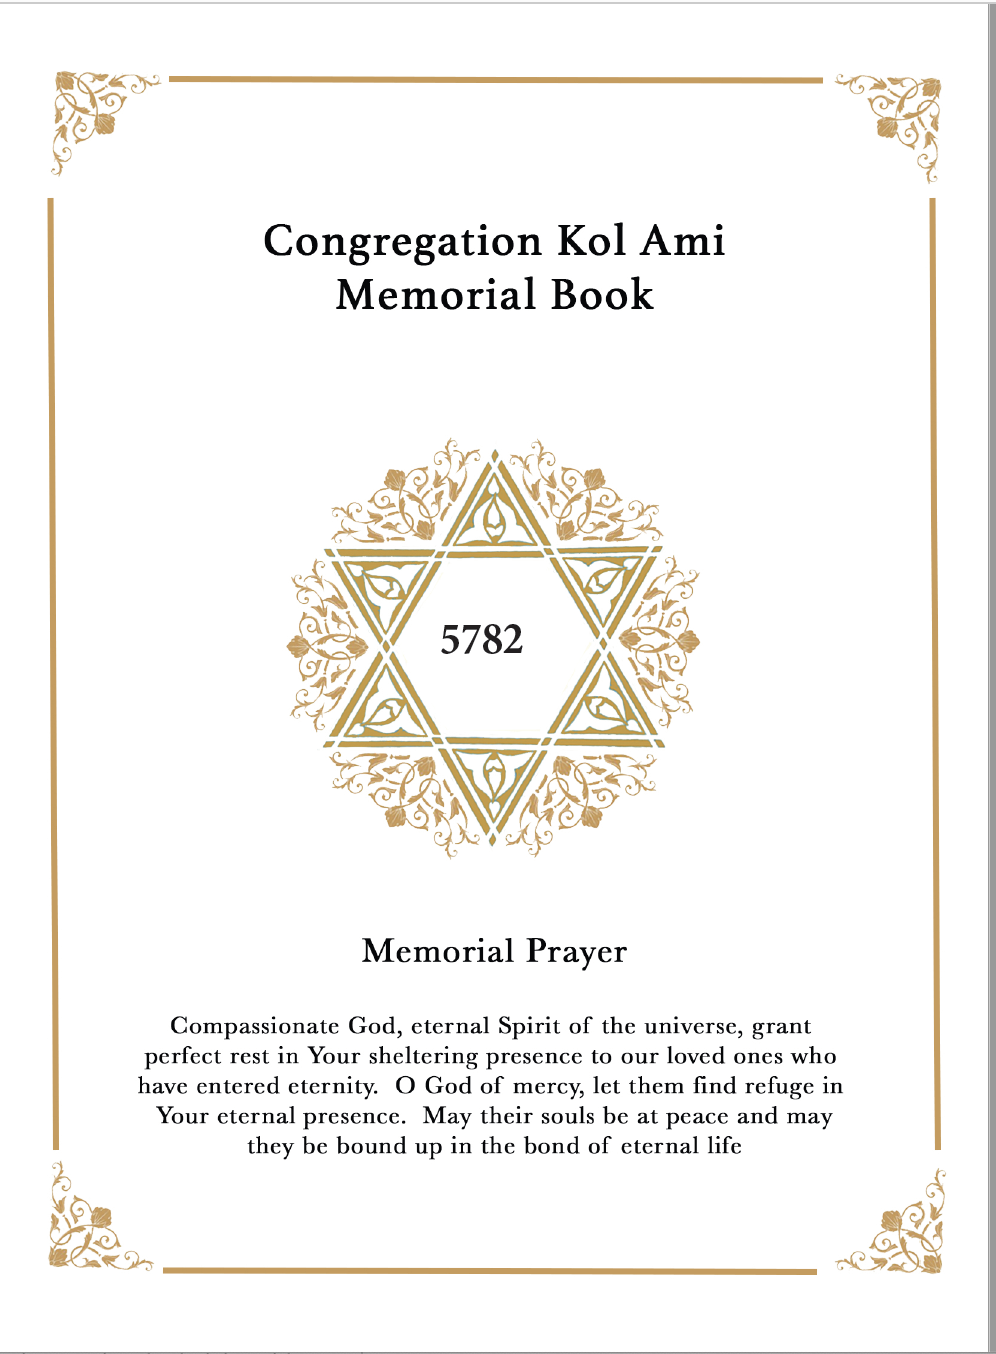 Congregation Kol Ami Memorial Book